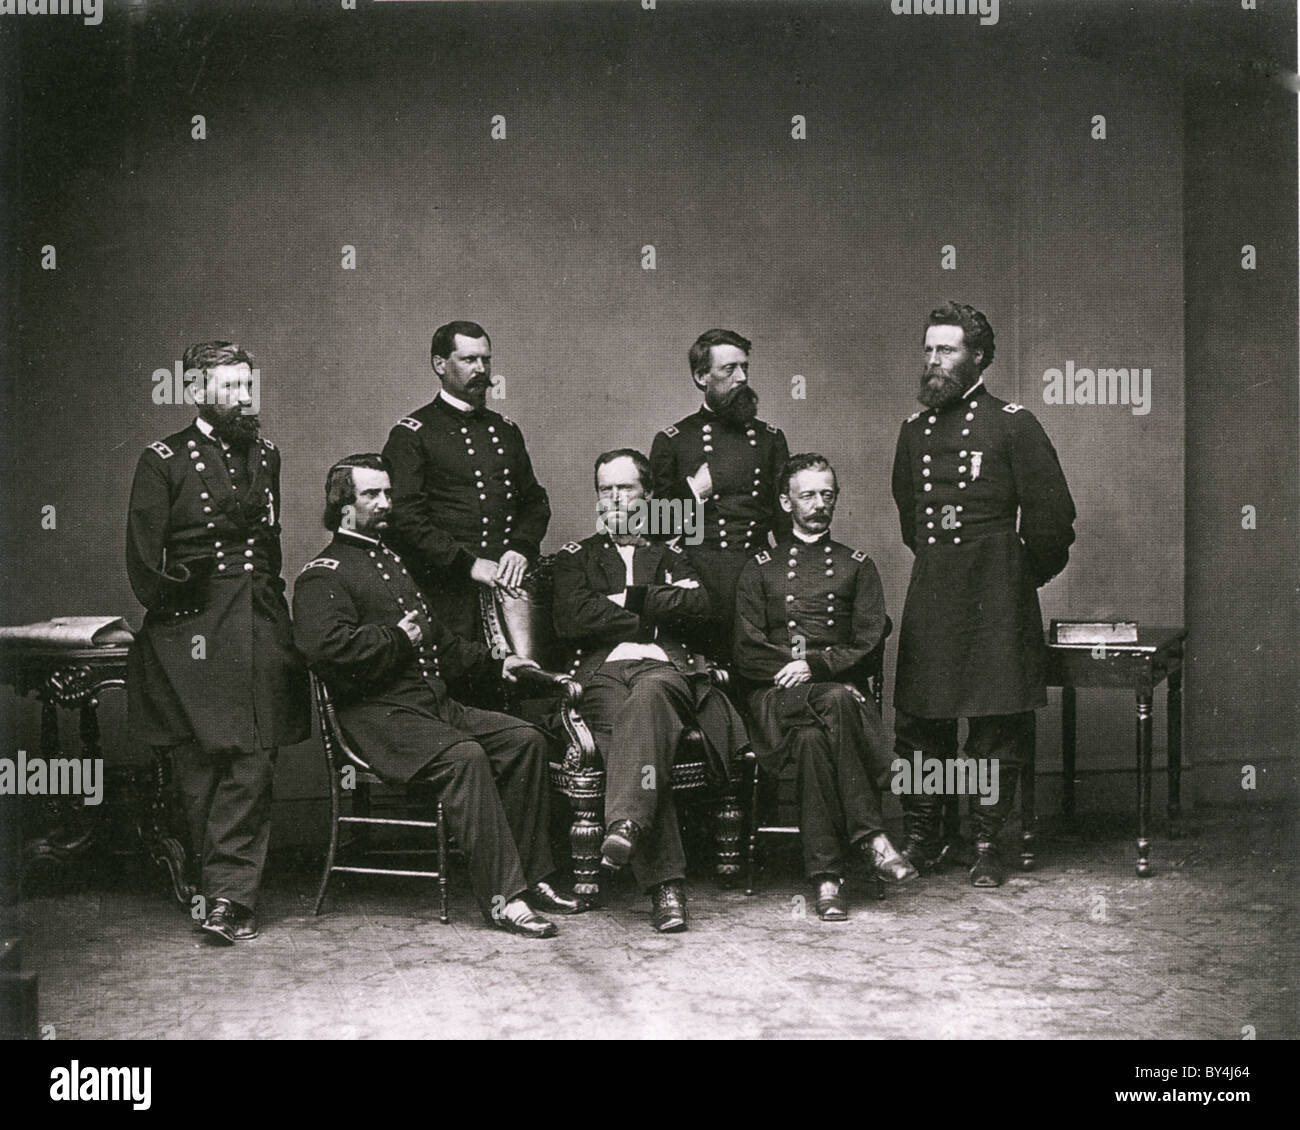 Generale WILLIAM SHERMAN (1820-1891) - centro - con alcuni dei suoi ufficiali di esercito dell'Unione nel 1865. Foto Matthew Brady Foto Stock